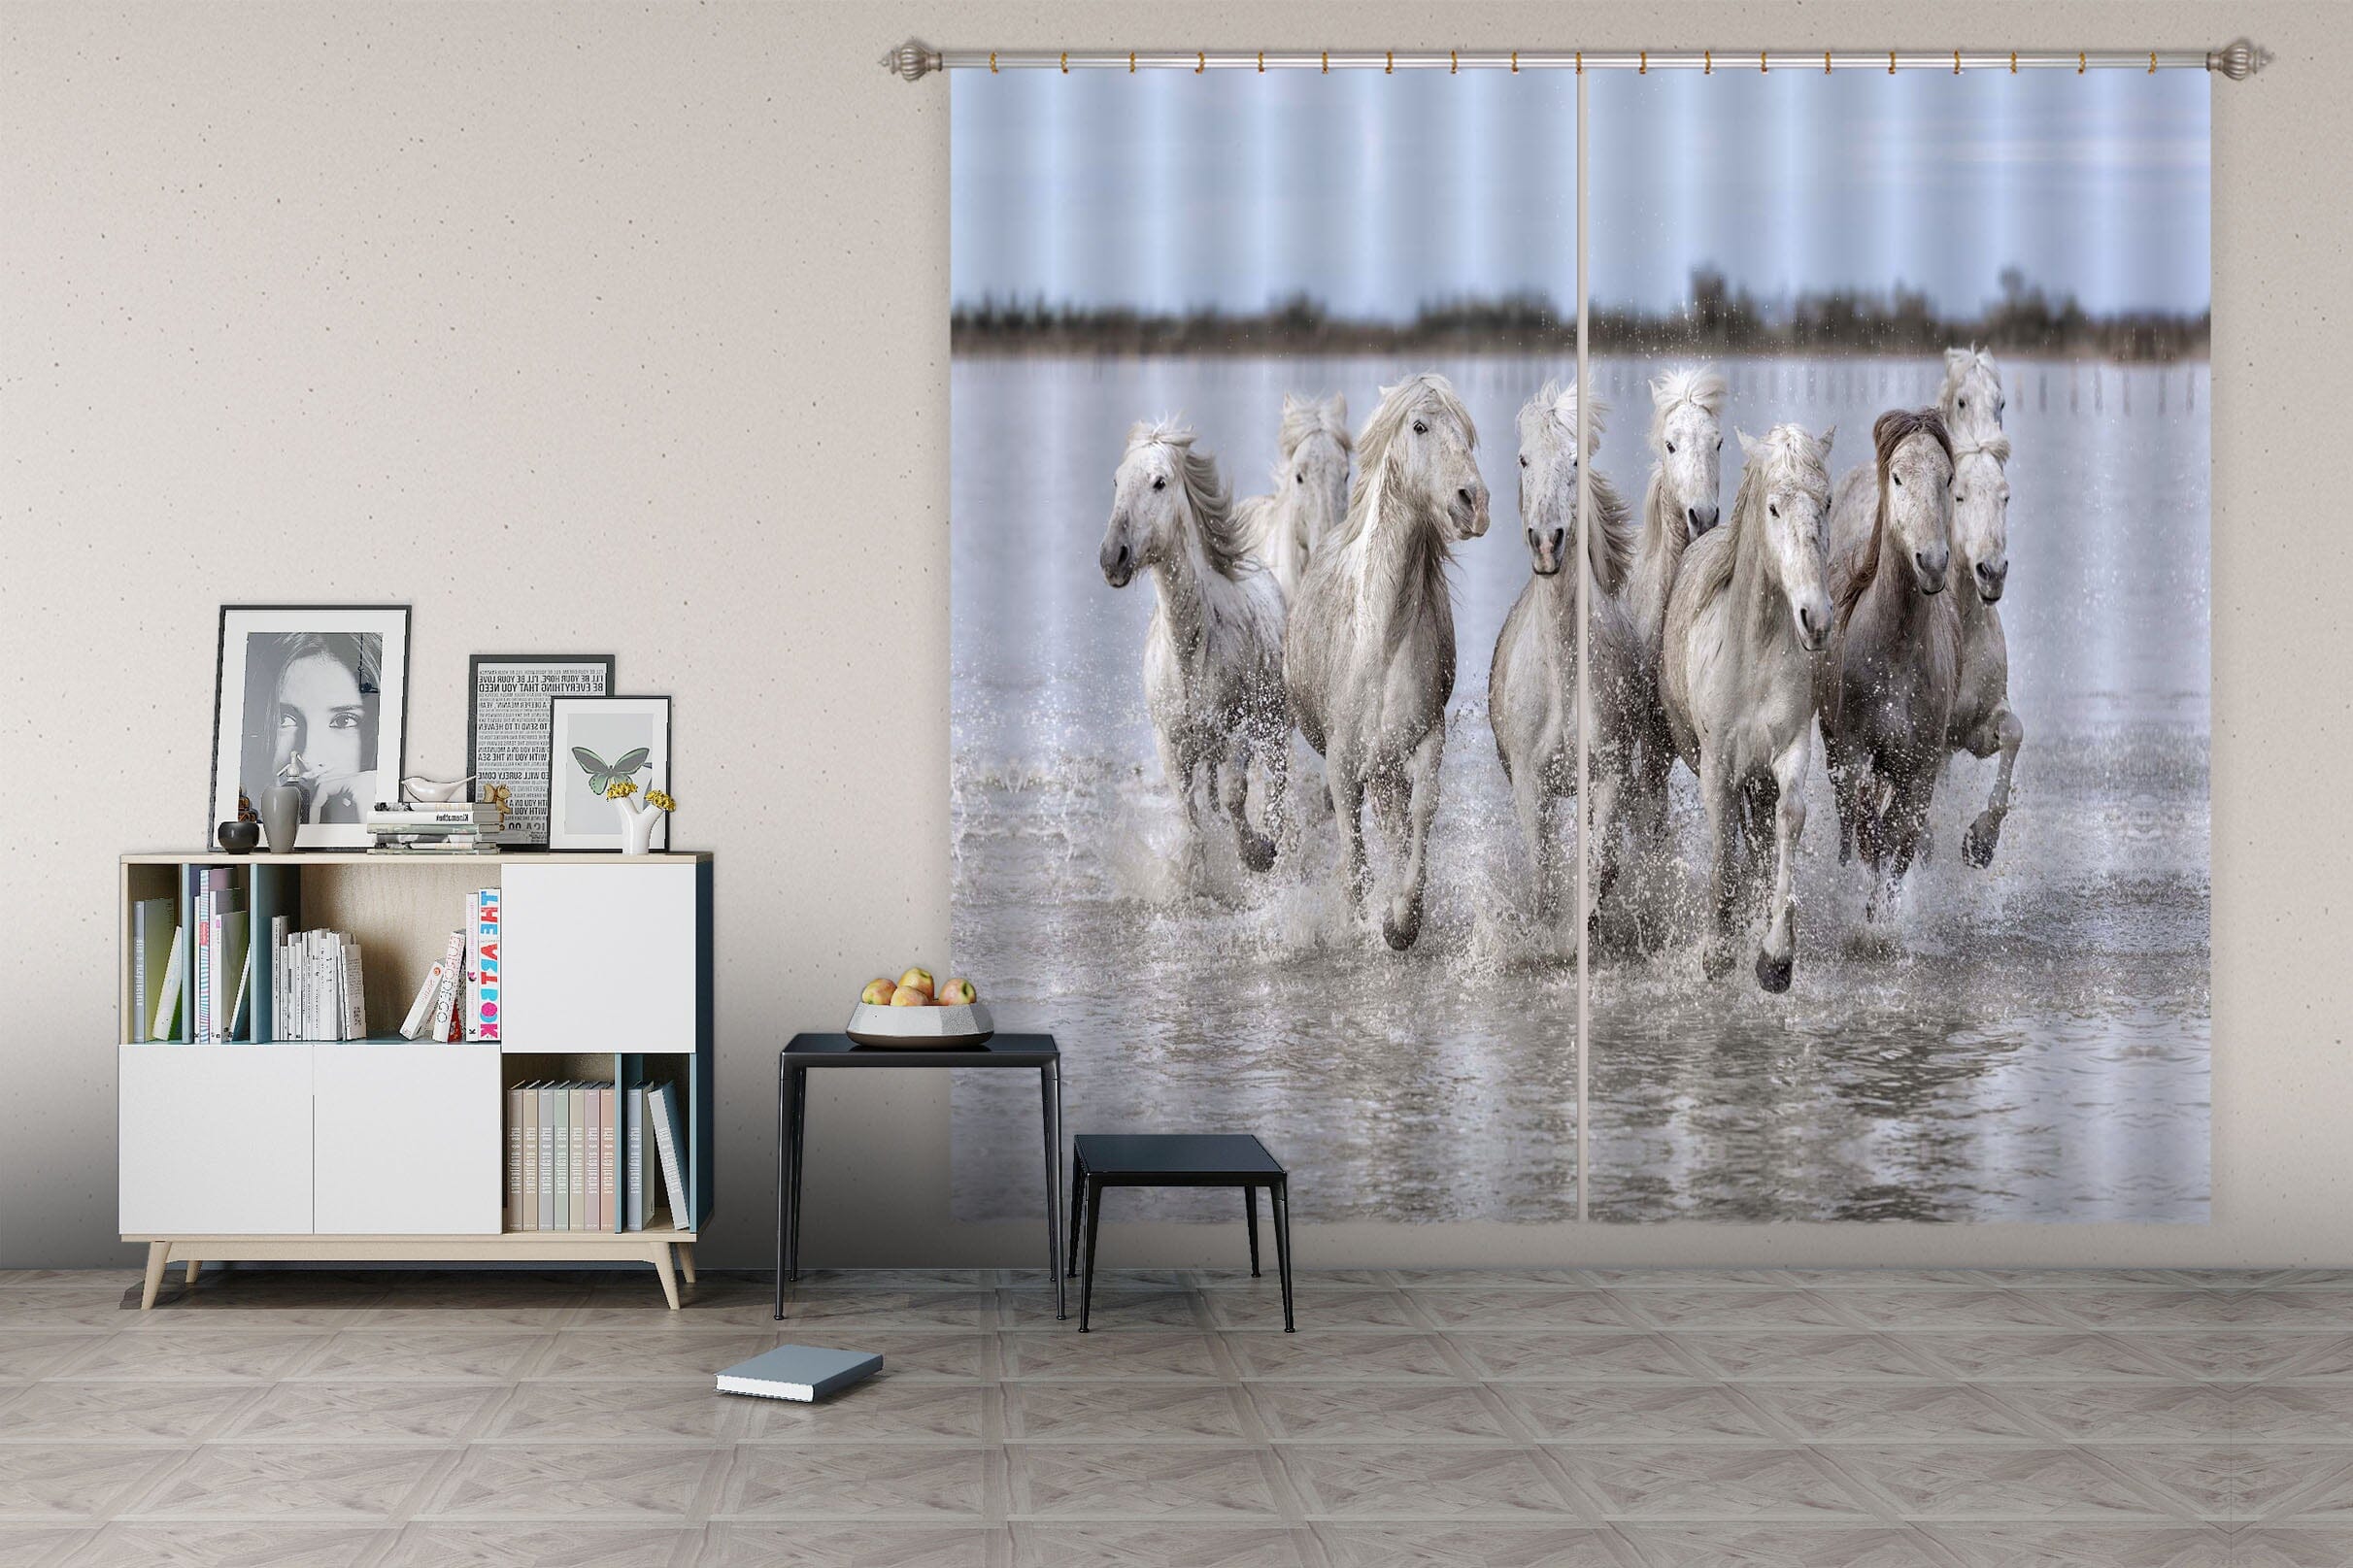 3D White Horse 069 Marco Carmassi Curtain Curtains Drapes Curtains AJ Creativity Home 